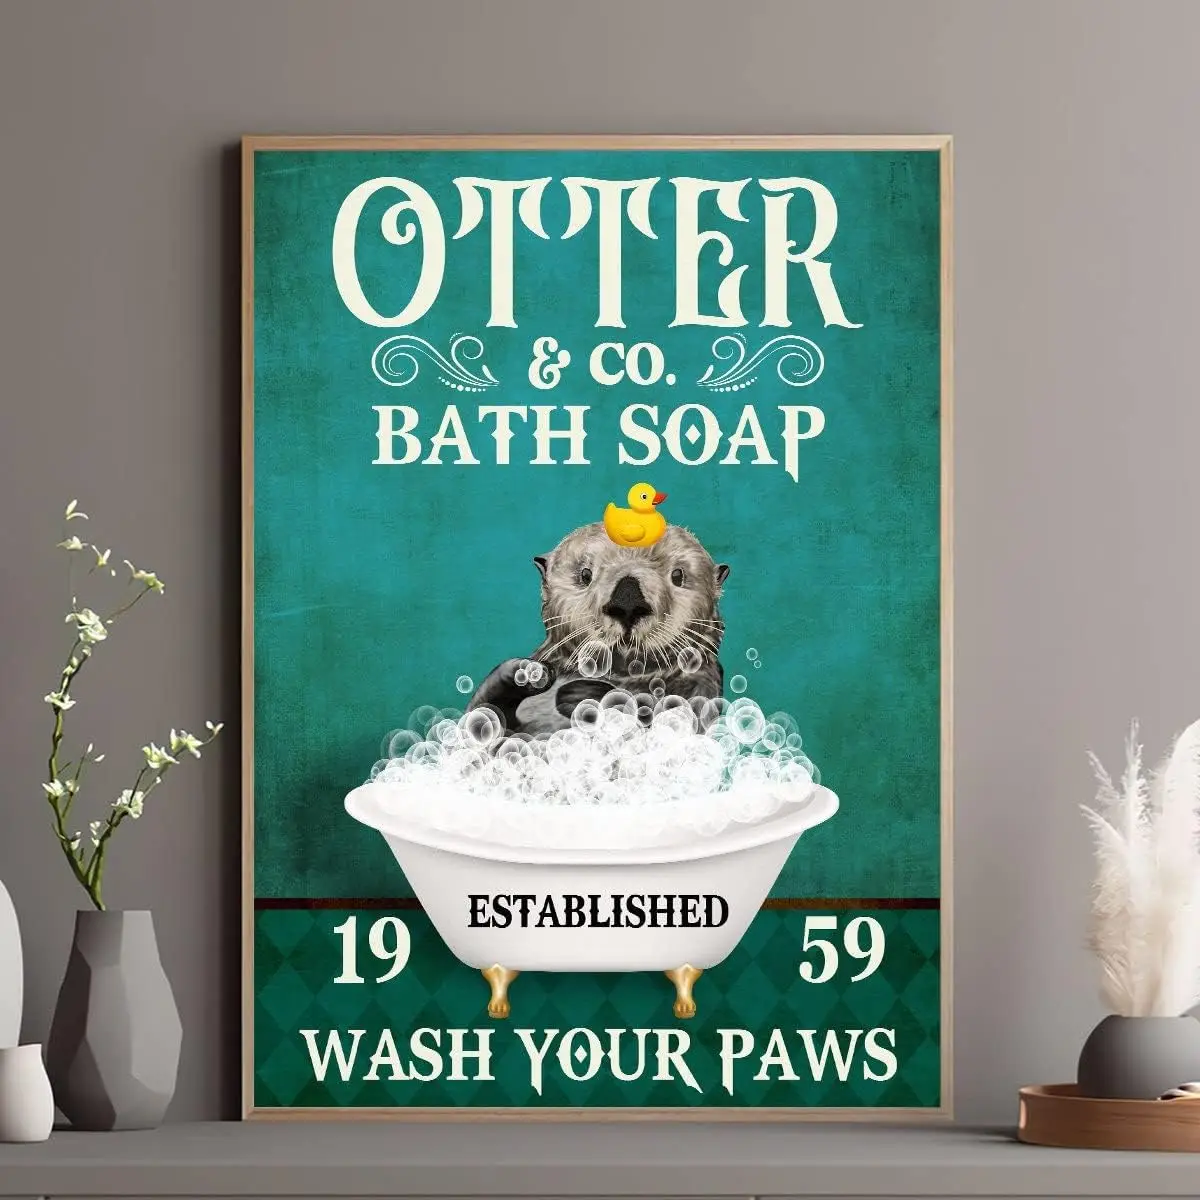 Ретро металлический жестяной знак 5,5 х 8 дюймов Забавное мыло для ванны Otter Co Wash Your Paws Плакат Забавная выдра Ванна Плакат Забавный плакат с выдрой